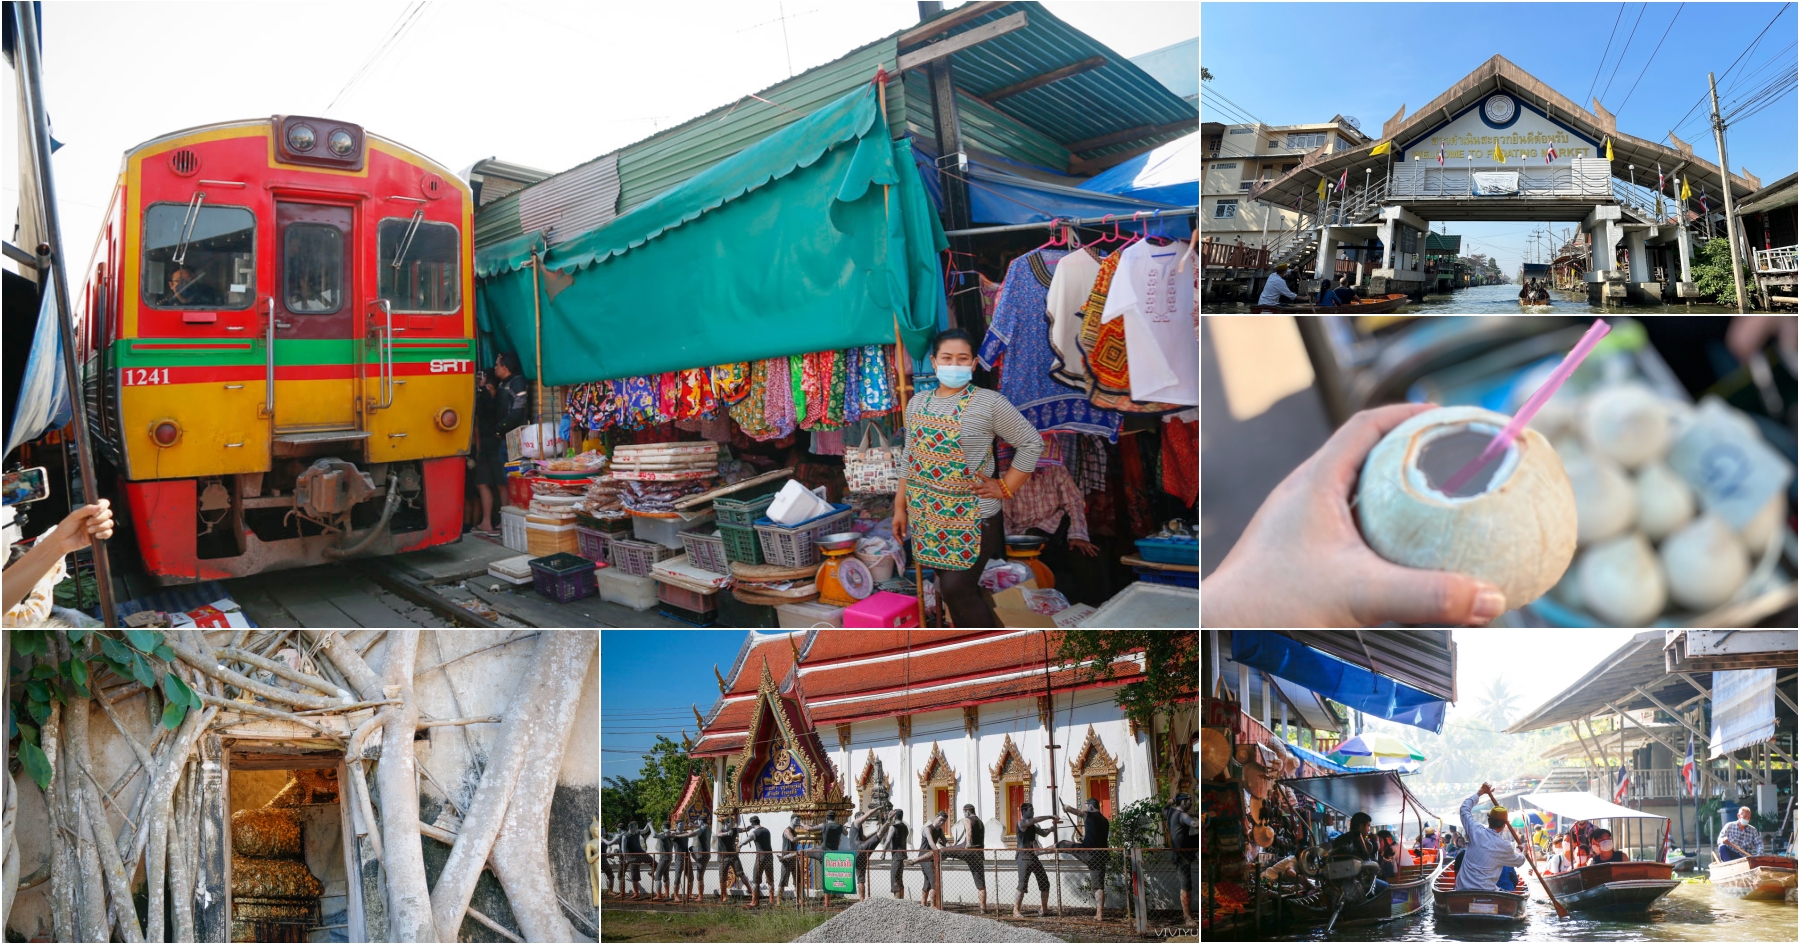 延伸閱讀：[曼谷景點]曼谷水上市場一日遊|丹能莎朵、美功市場、樹中廟~遊客最愛曼谷近郊經典行程